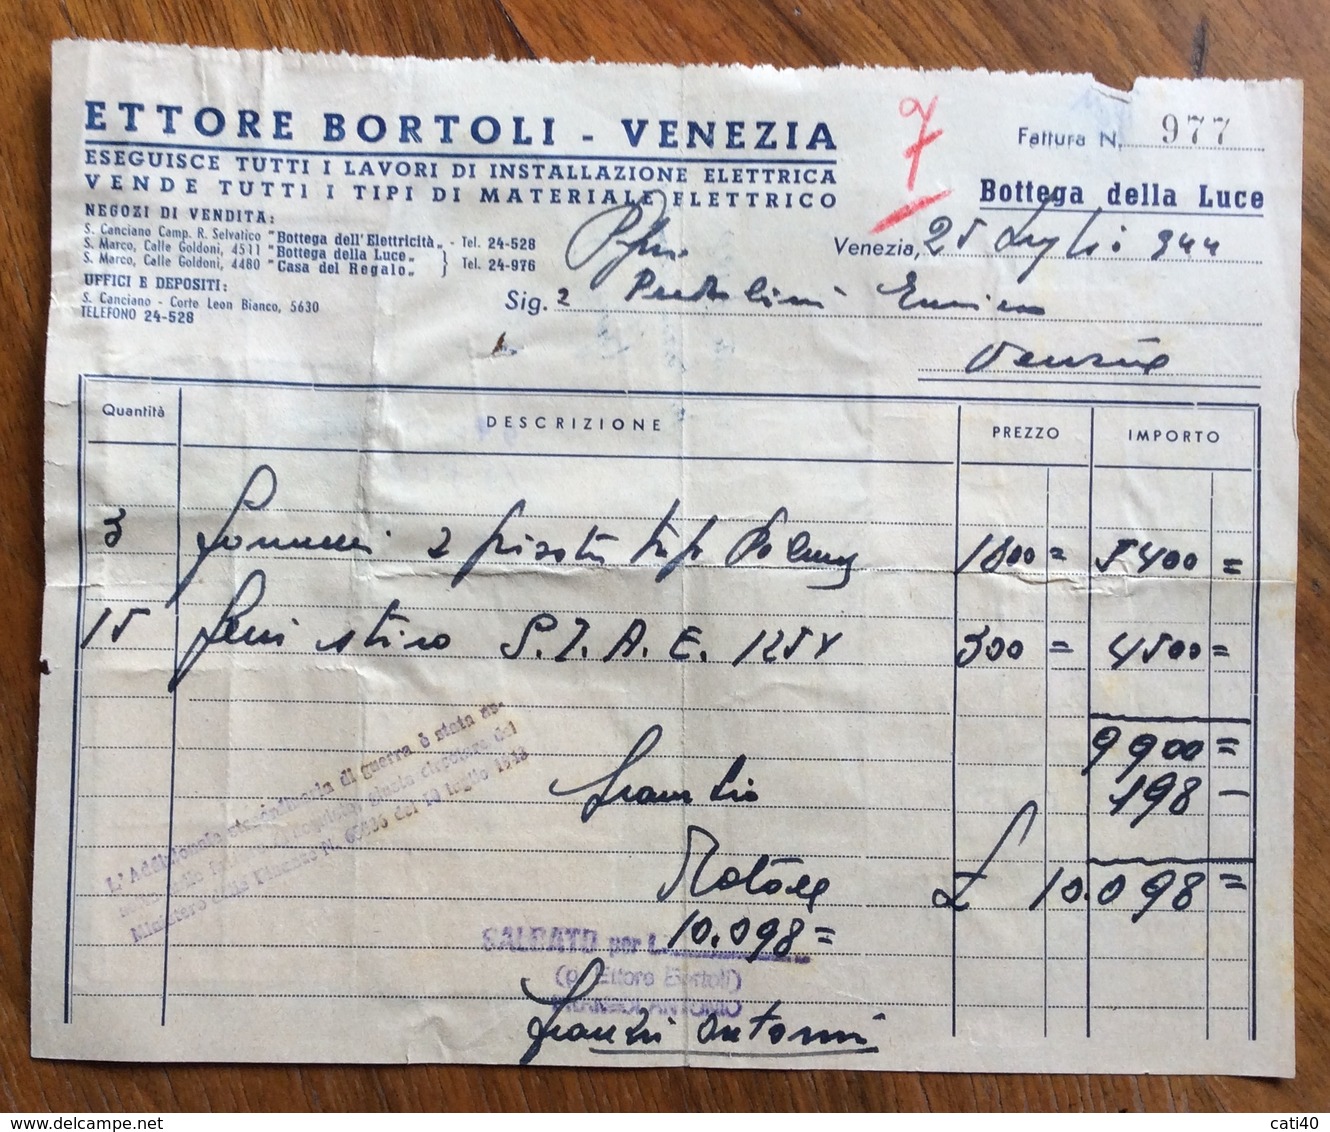 MARCHE DA BOLLO  SU FATTURA IN REPUBBLICA SOCIALE ITALIANA : ETTORE BORTOLI VENEZIA  BOTTEGA DELLA LUCE 1944 - Fiscali